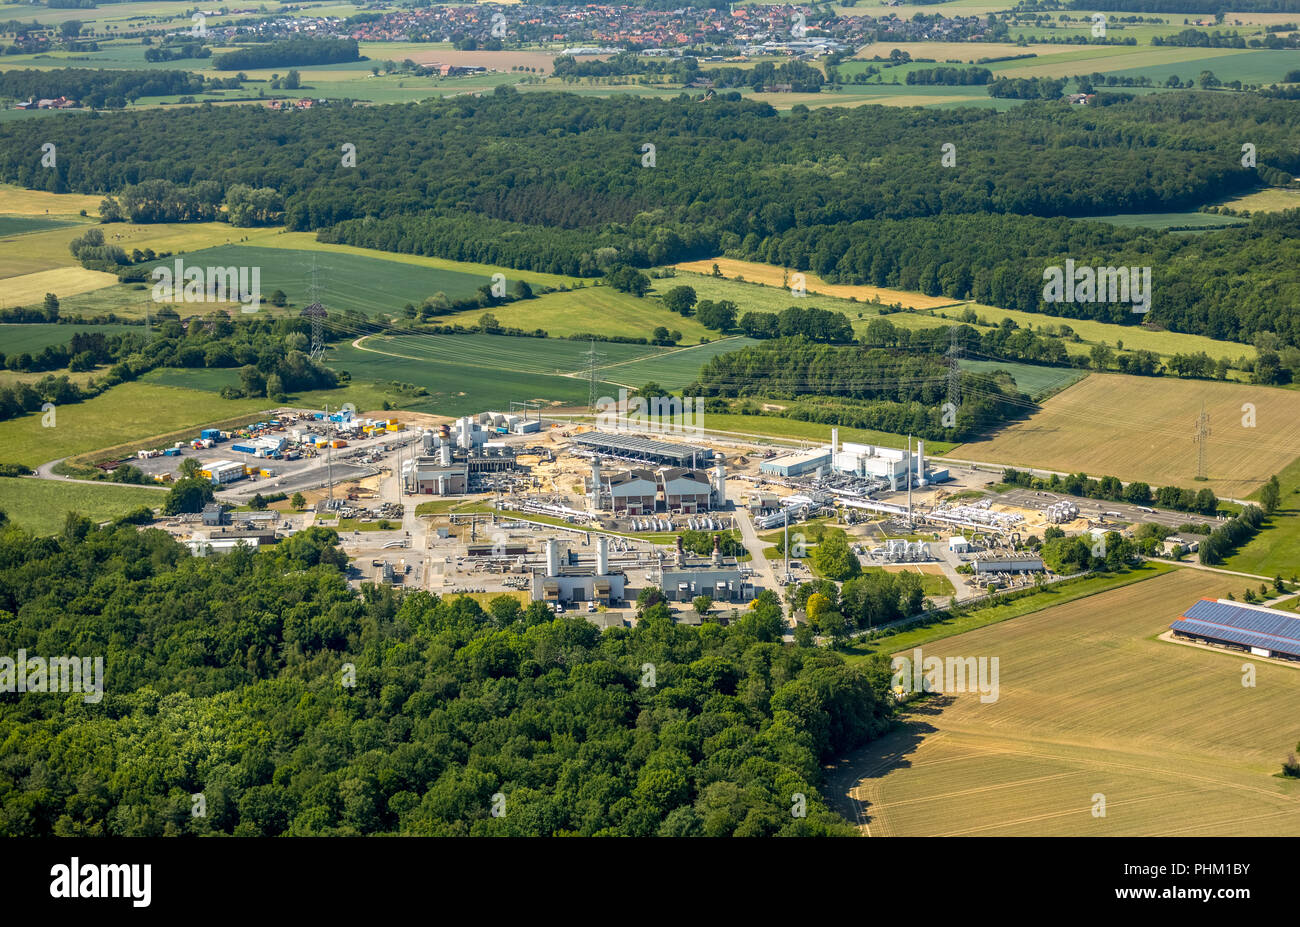 Luftaufnahme, Erdgas Kompressorstation in Ehringhausen, Open Grid Europe, Filter, Kühler und Systeme für interne Gasversorgung, Gasversorgung c Stockfoto